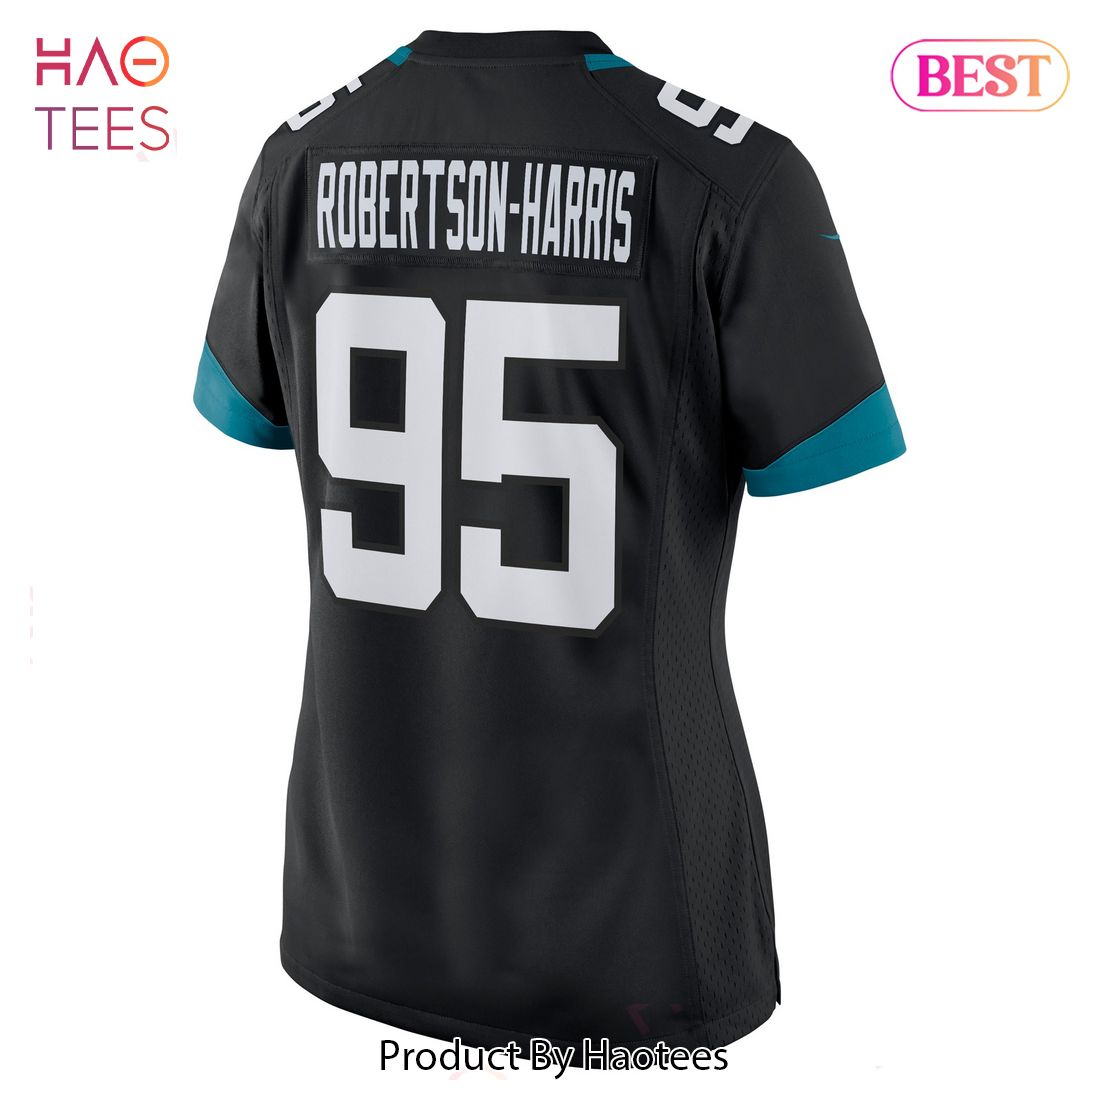 Roy Robertson-Harris Jacksonville Jaguars Nike Women's Game Jersey Black